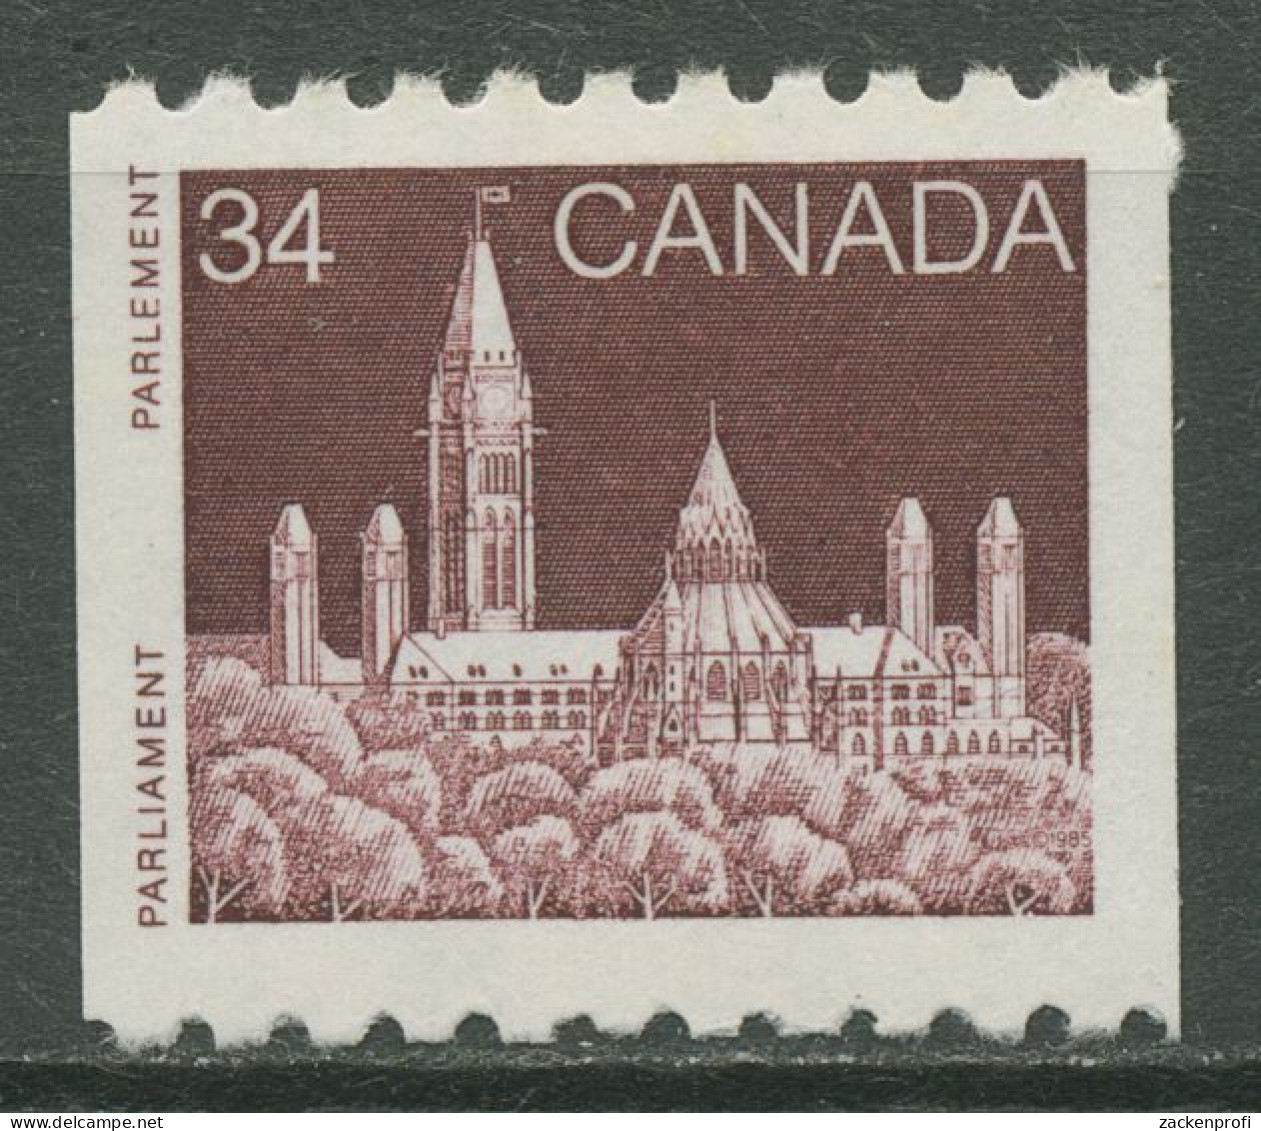 Kanada 1985 Parlamentsgebäude In Ottawa 968 Postfrisch - Unused Stamps